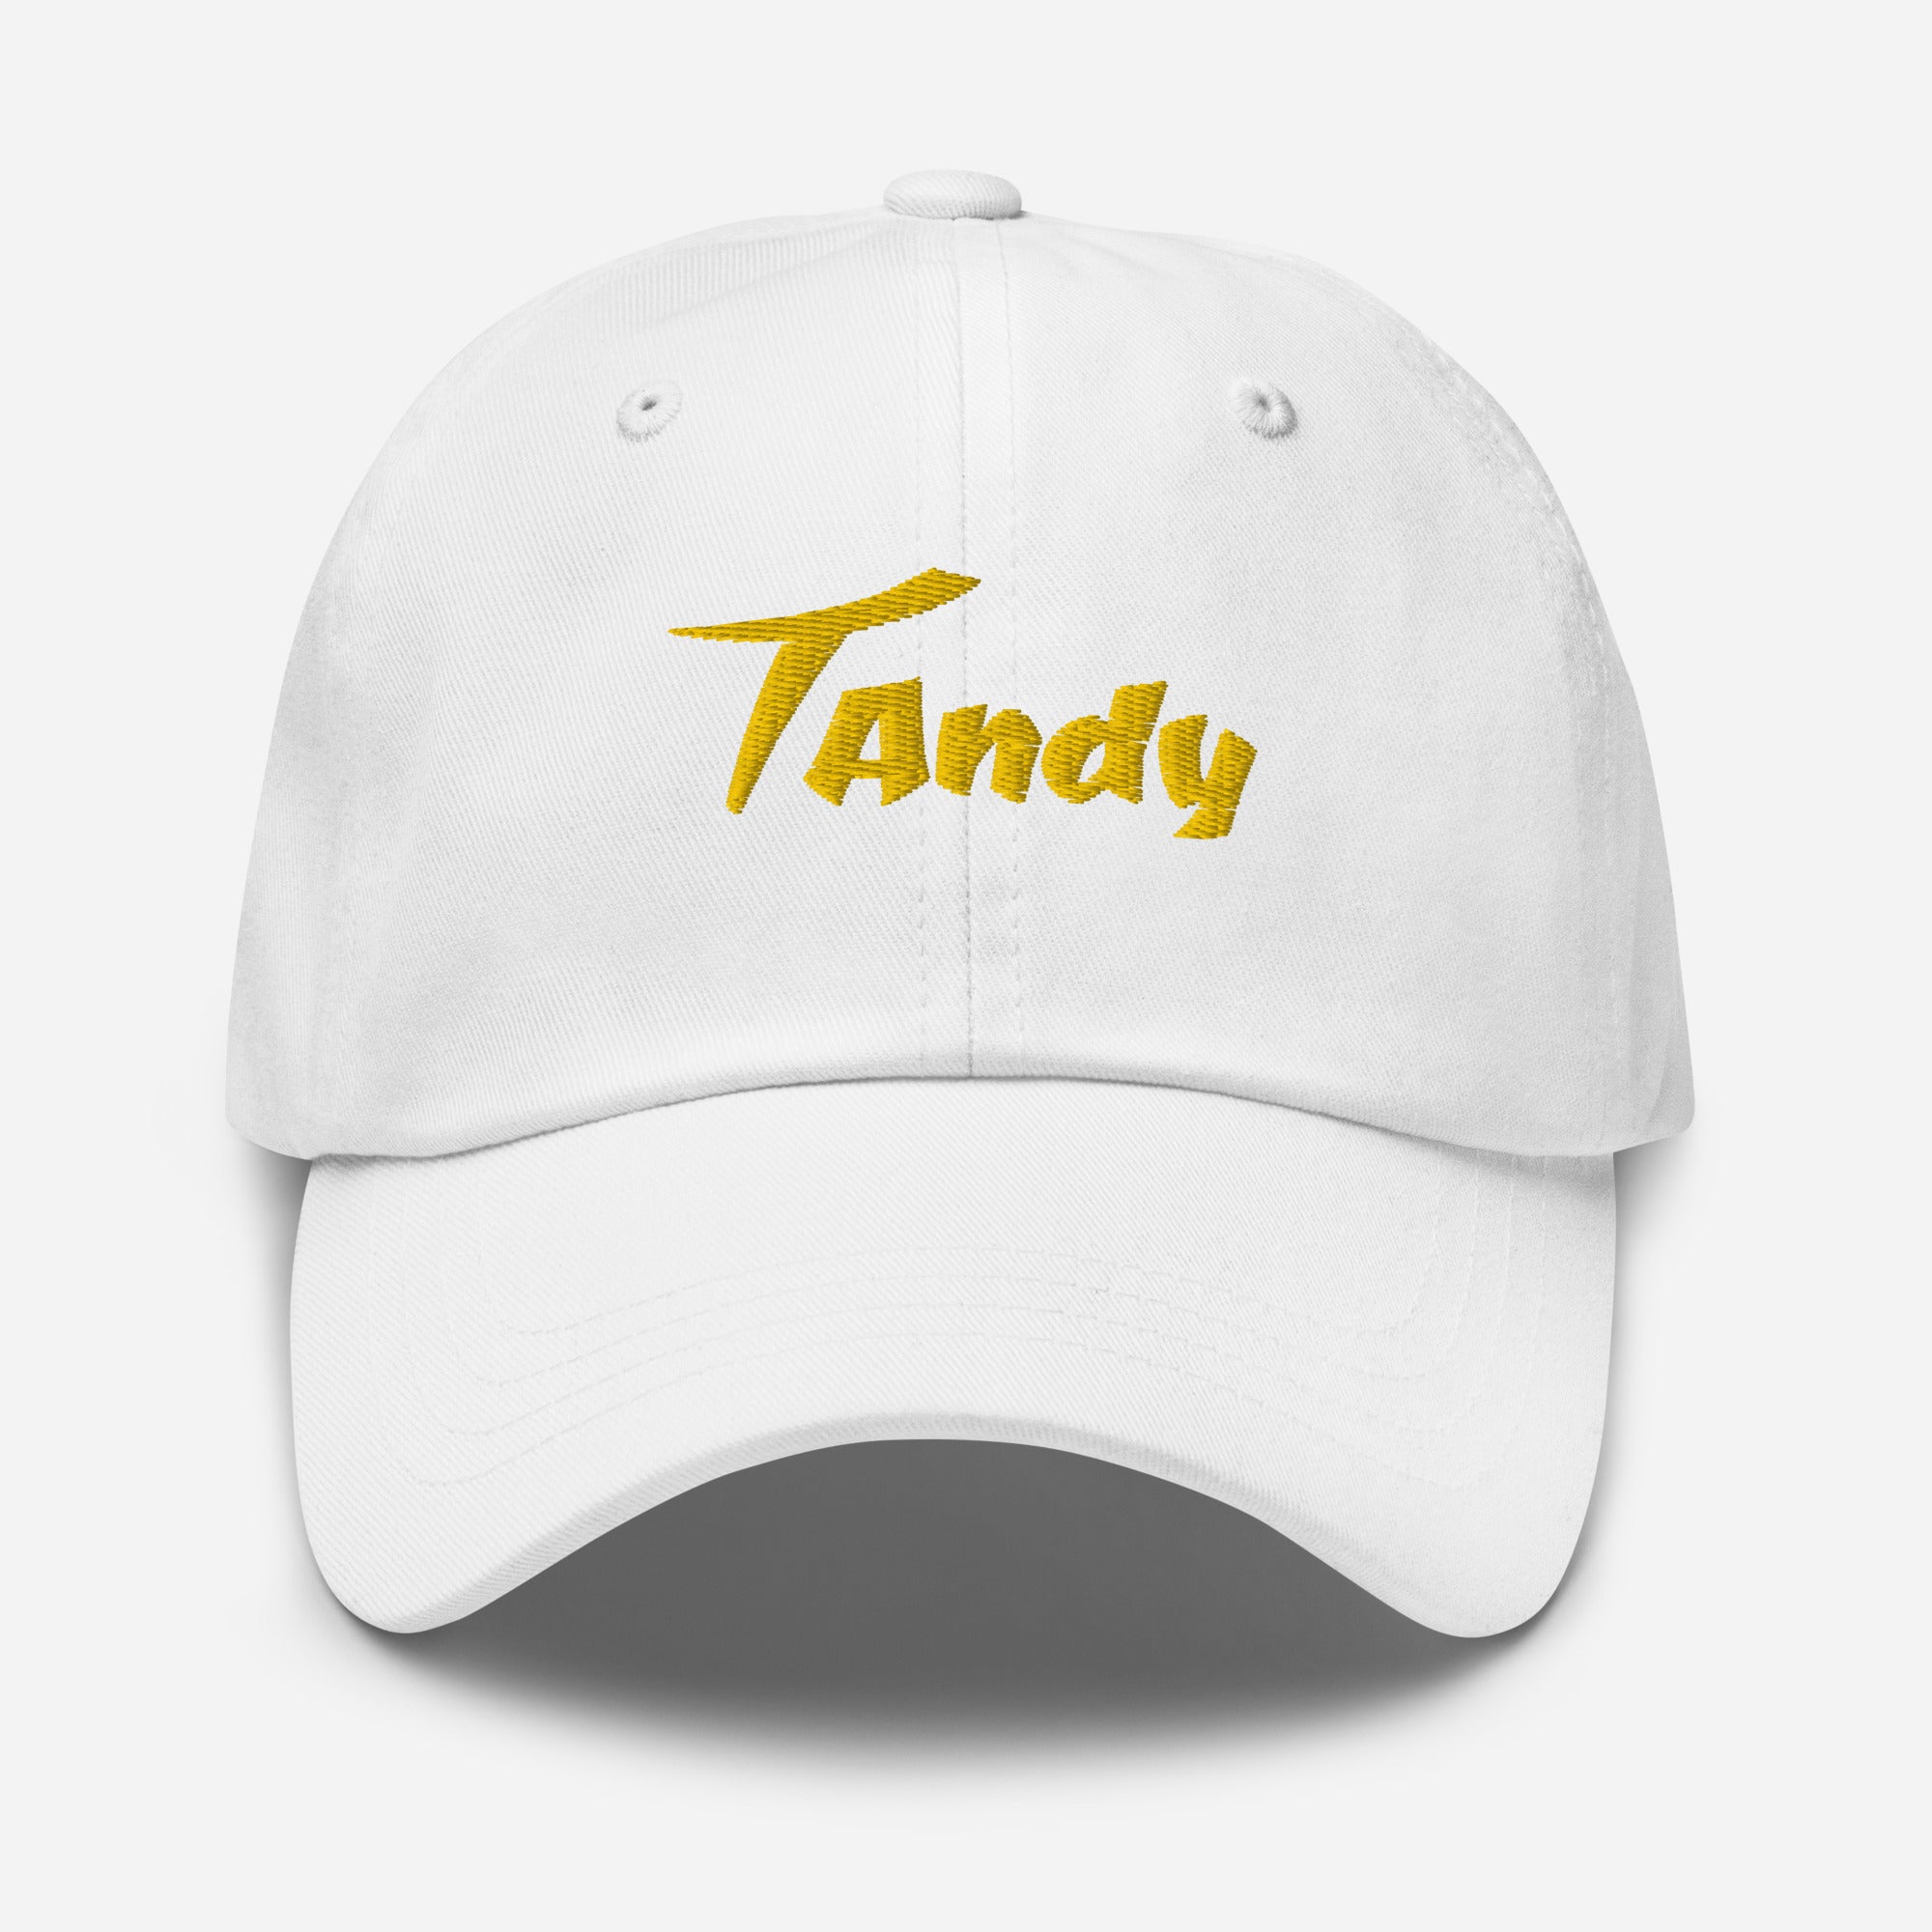 Tandy Dad hat